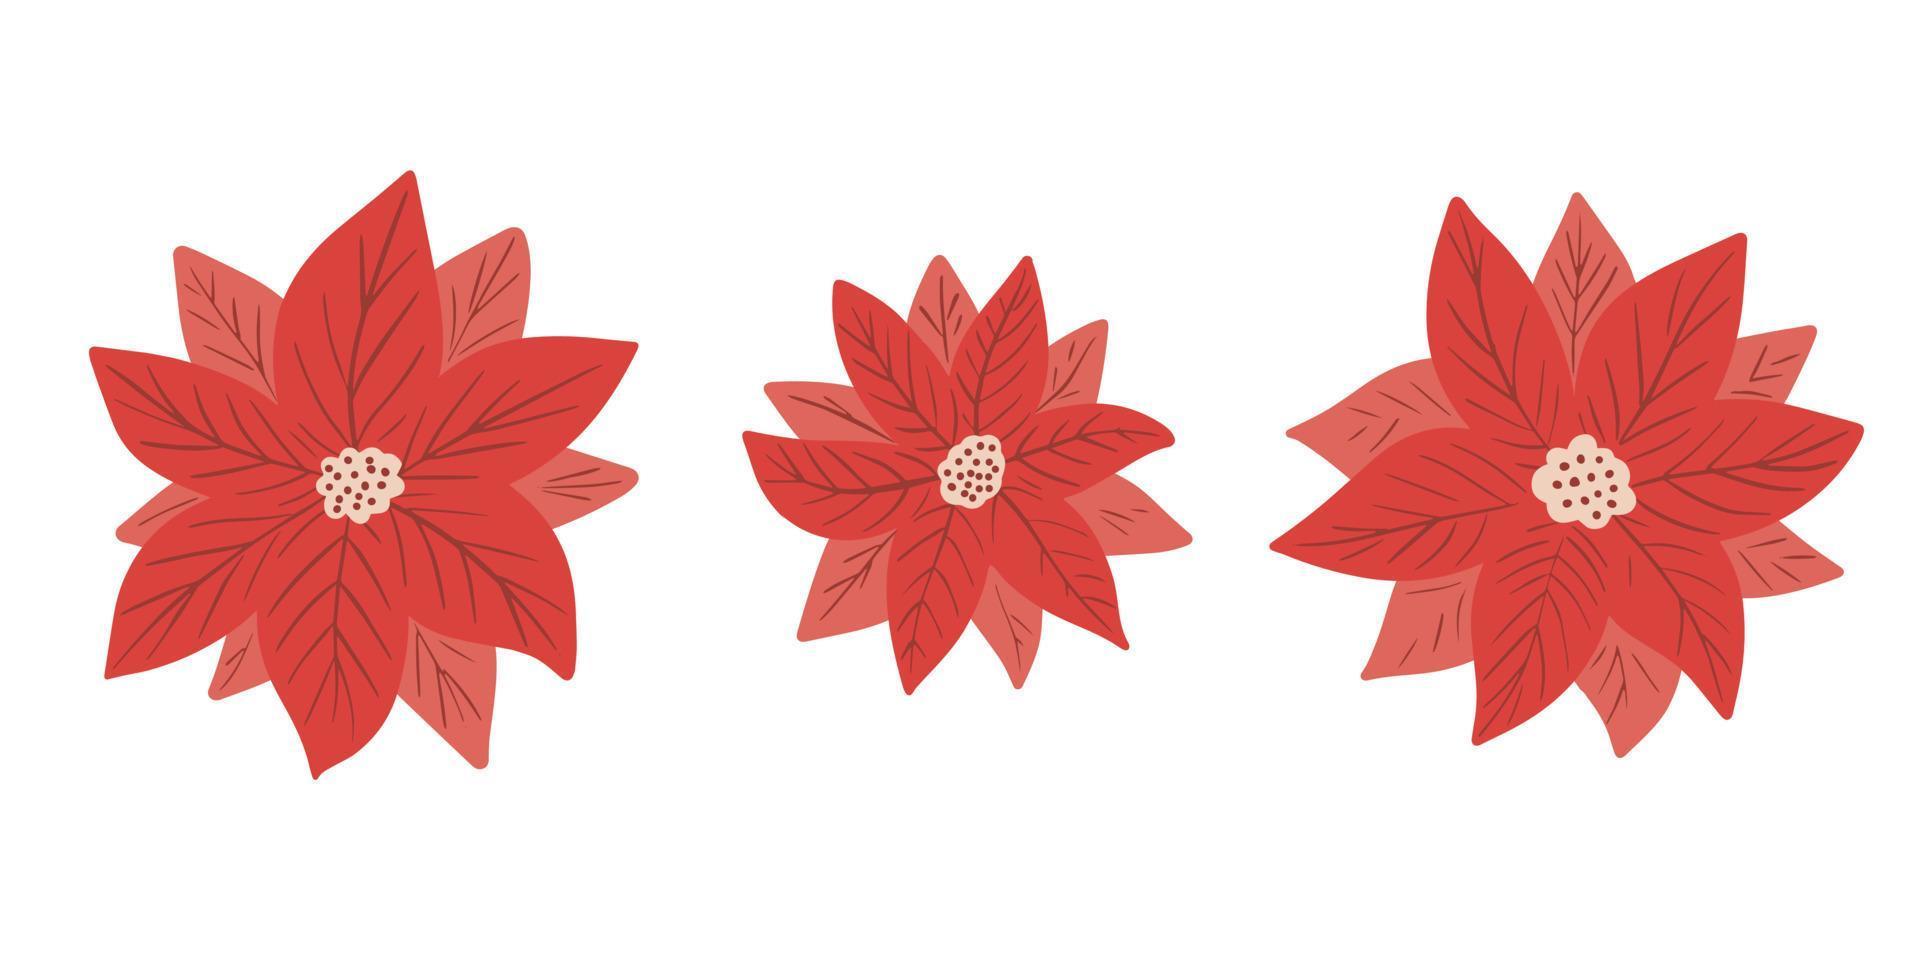 Weihnachtsstern - Weihnachtsstern - Blumenvektorsammlung im einfachen handgezeichneten Stil isoliert auf weißem Hintergrund. ClipArt, Elemente für festliches Winterdesign, Blumenkranz, Einladung, Poster vektor